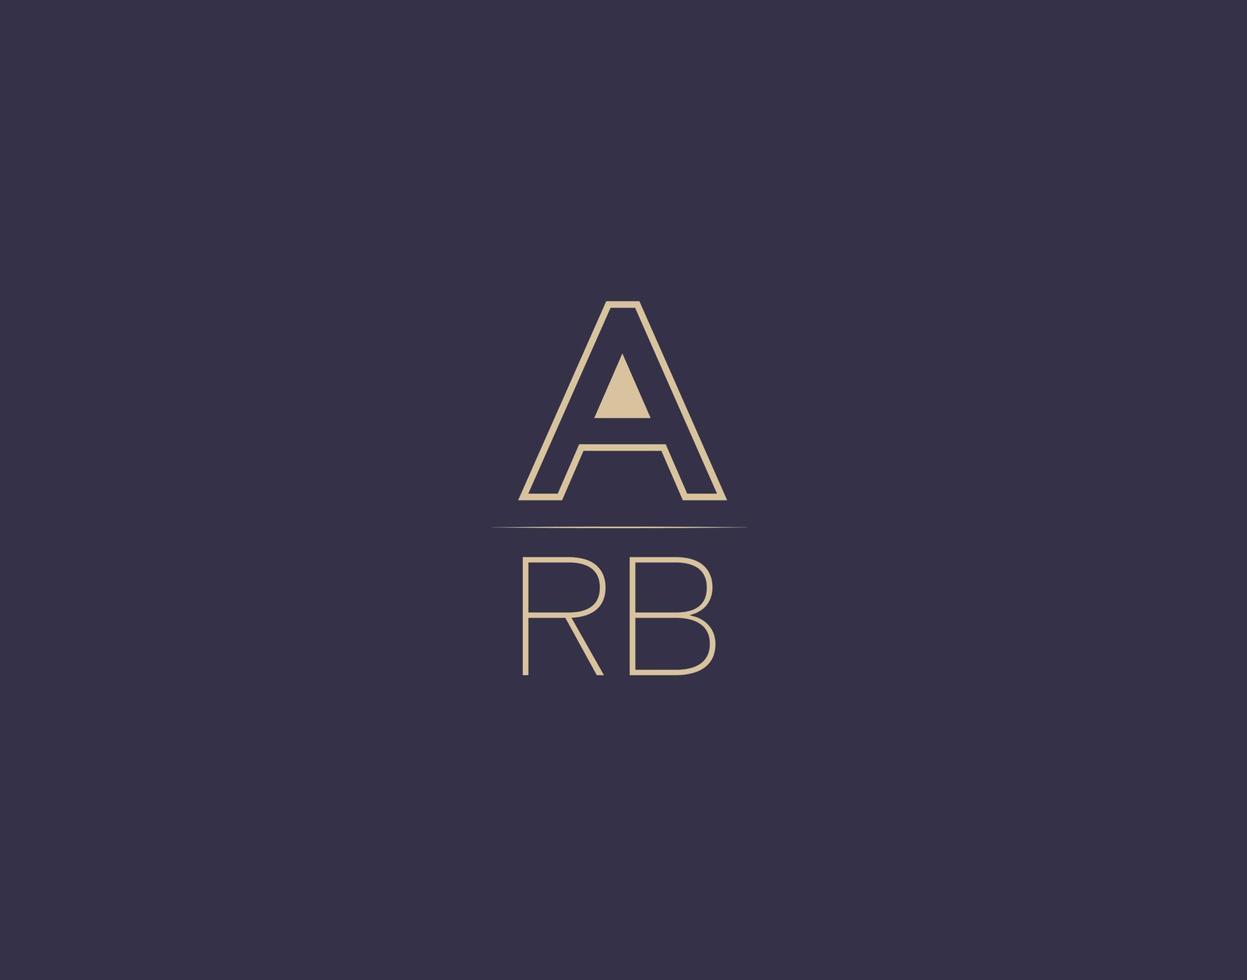 ARB letter logo design modern minimalist vector images